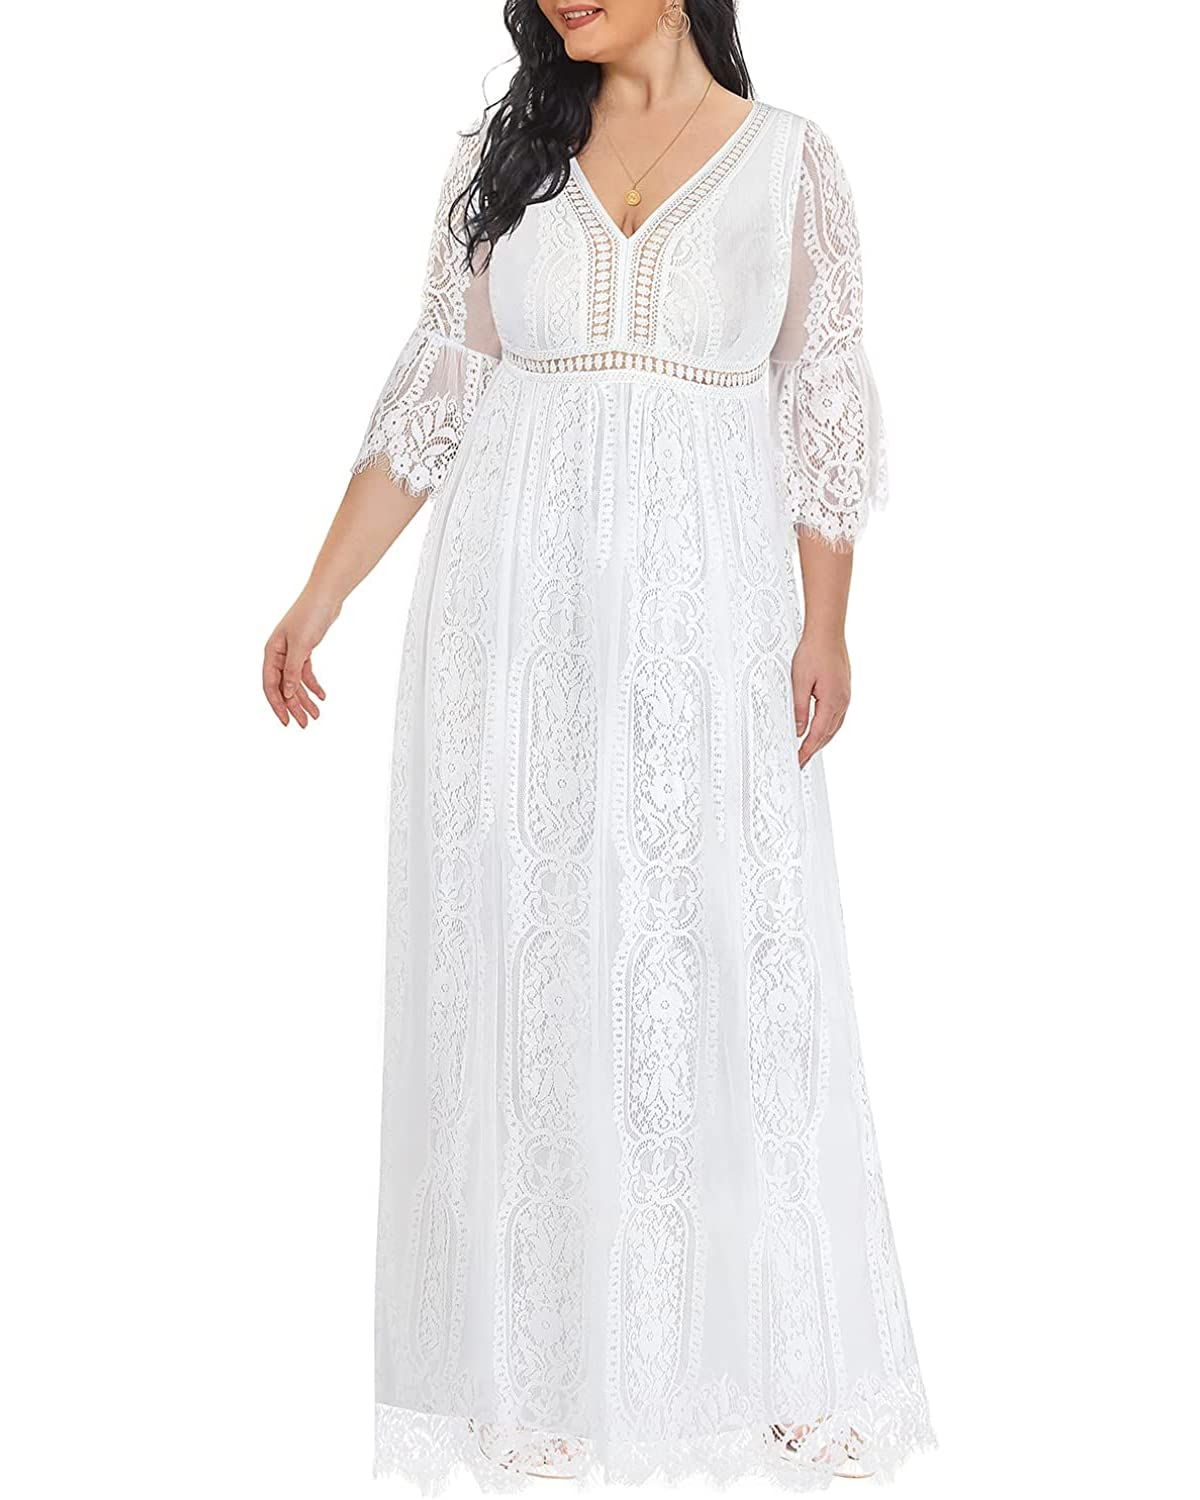 Take A Bow White Lace Up Plus Size Mini Dress – Haute2Wear